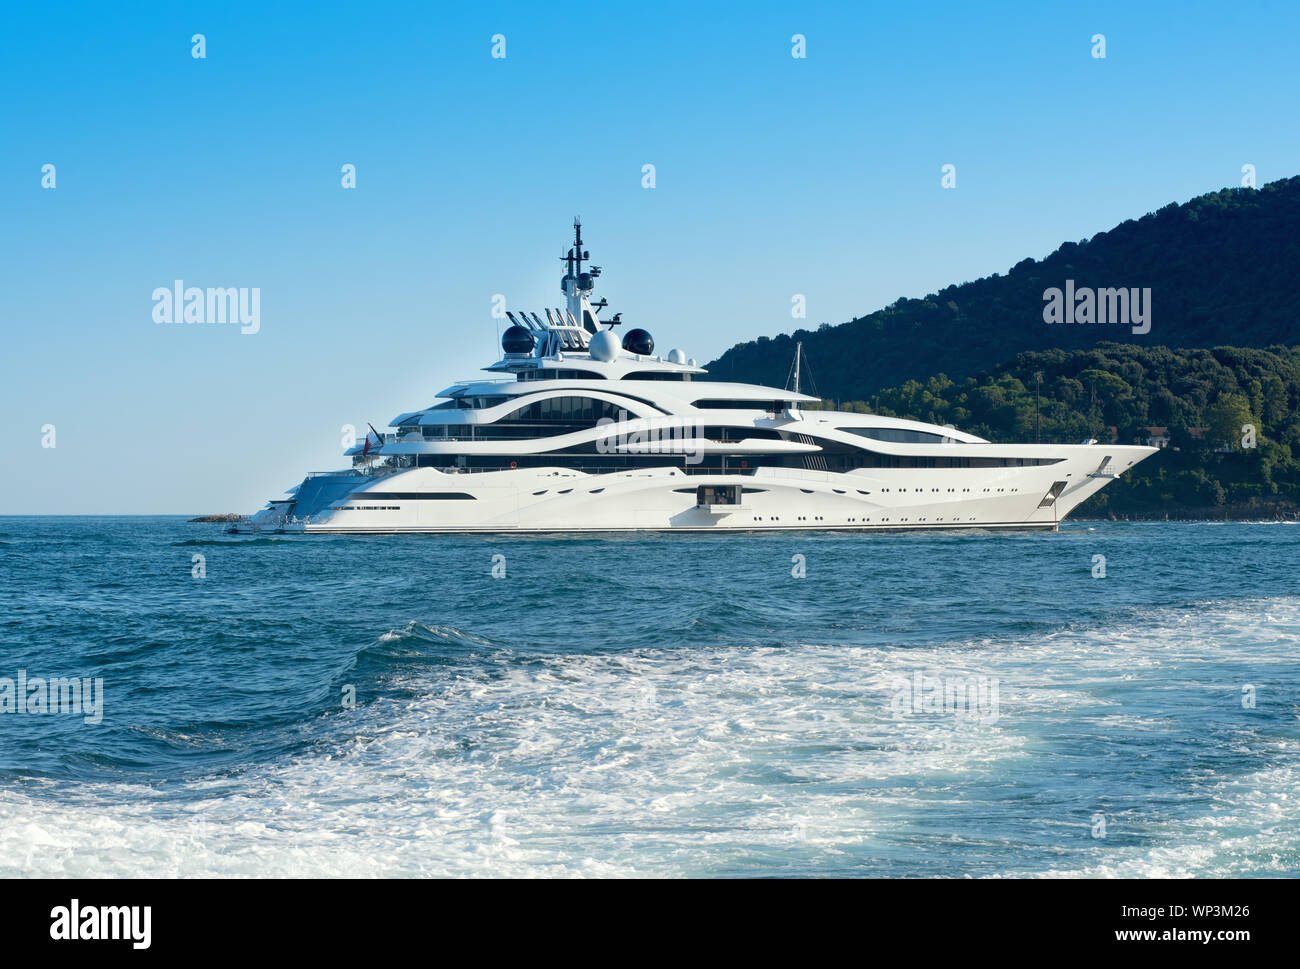 Grand luxury motor yacht croisières en mer à bord d'un océan calme passant un littoral boisé vue sur le sillage d'un navire de passage Banque D'Images